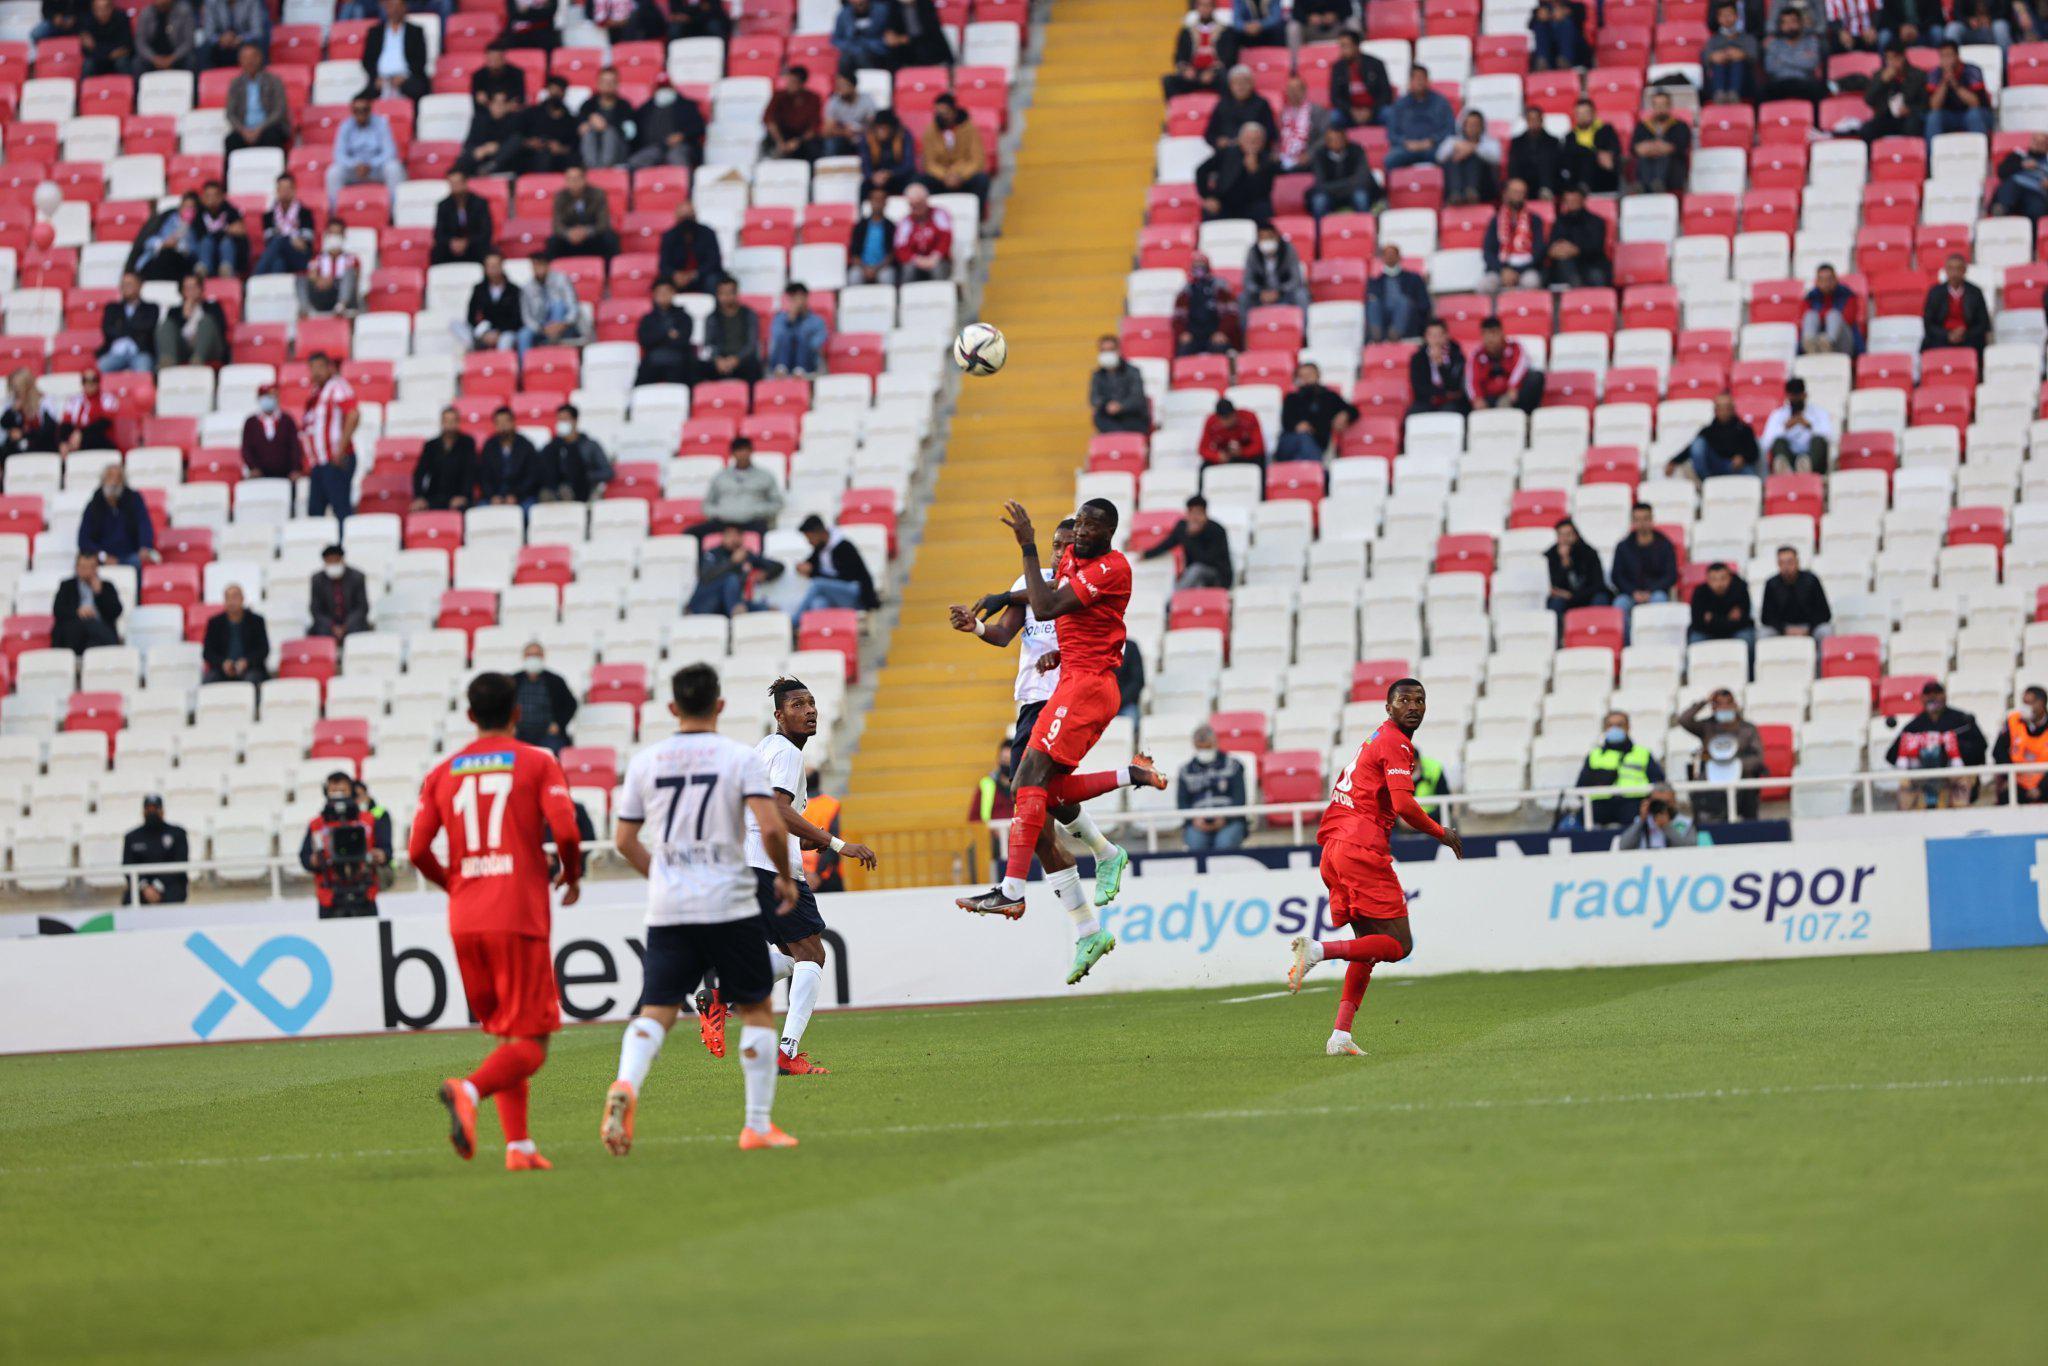 (ÖZET) Sivasspor - Adana Demirspor maç sonucu: 1-1